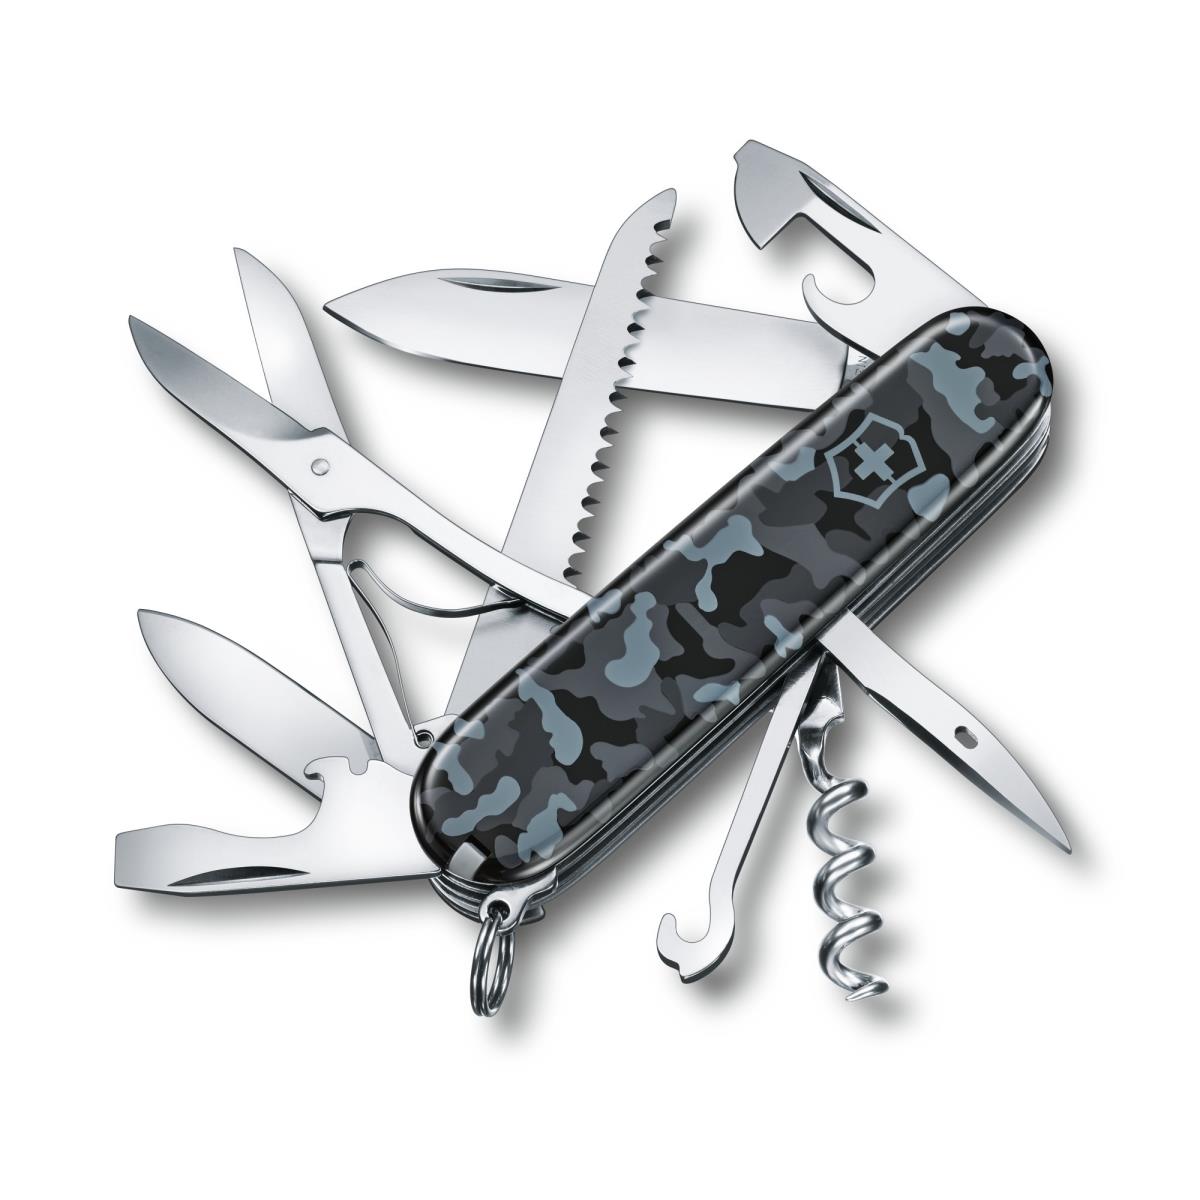 Нож 1.3713.942 складной, морской камуфляж VICTORINOX нож перочинный victorinox huntsman 91 мм 15 функций камуфляж